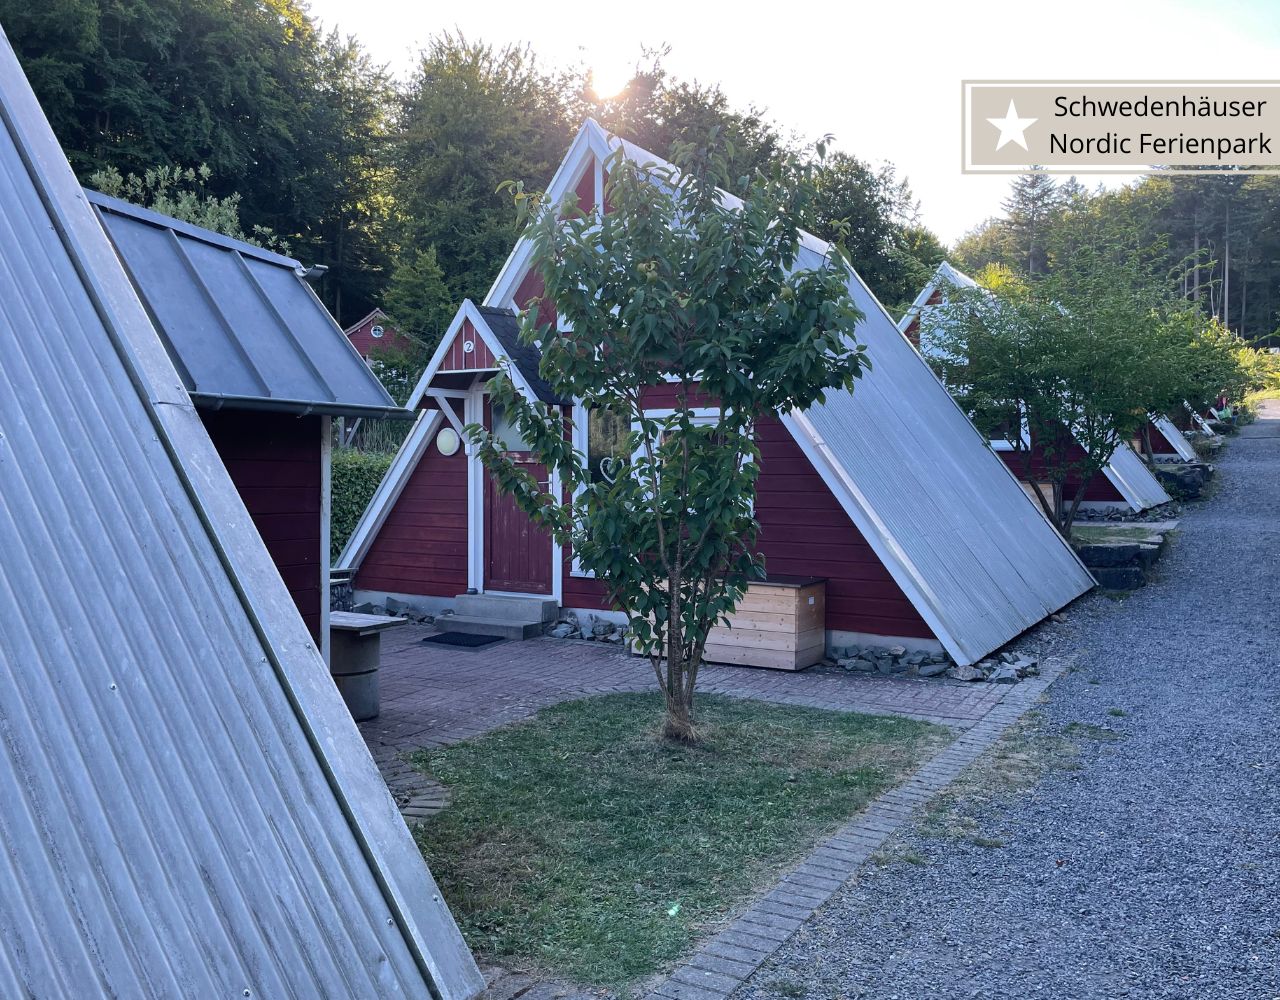 Ferienparks im Sauerland -Schwedenhäuser am Sorpesee im Nordic Ferienpark